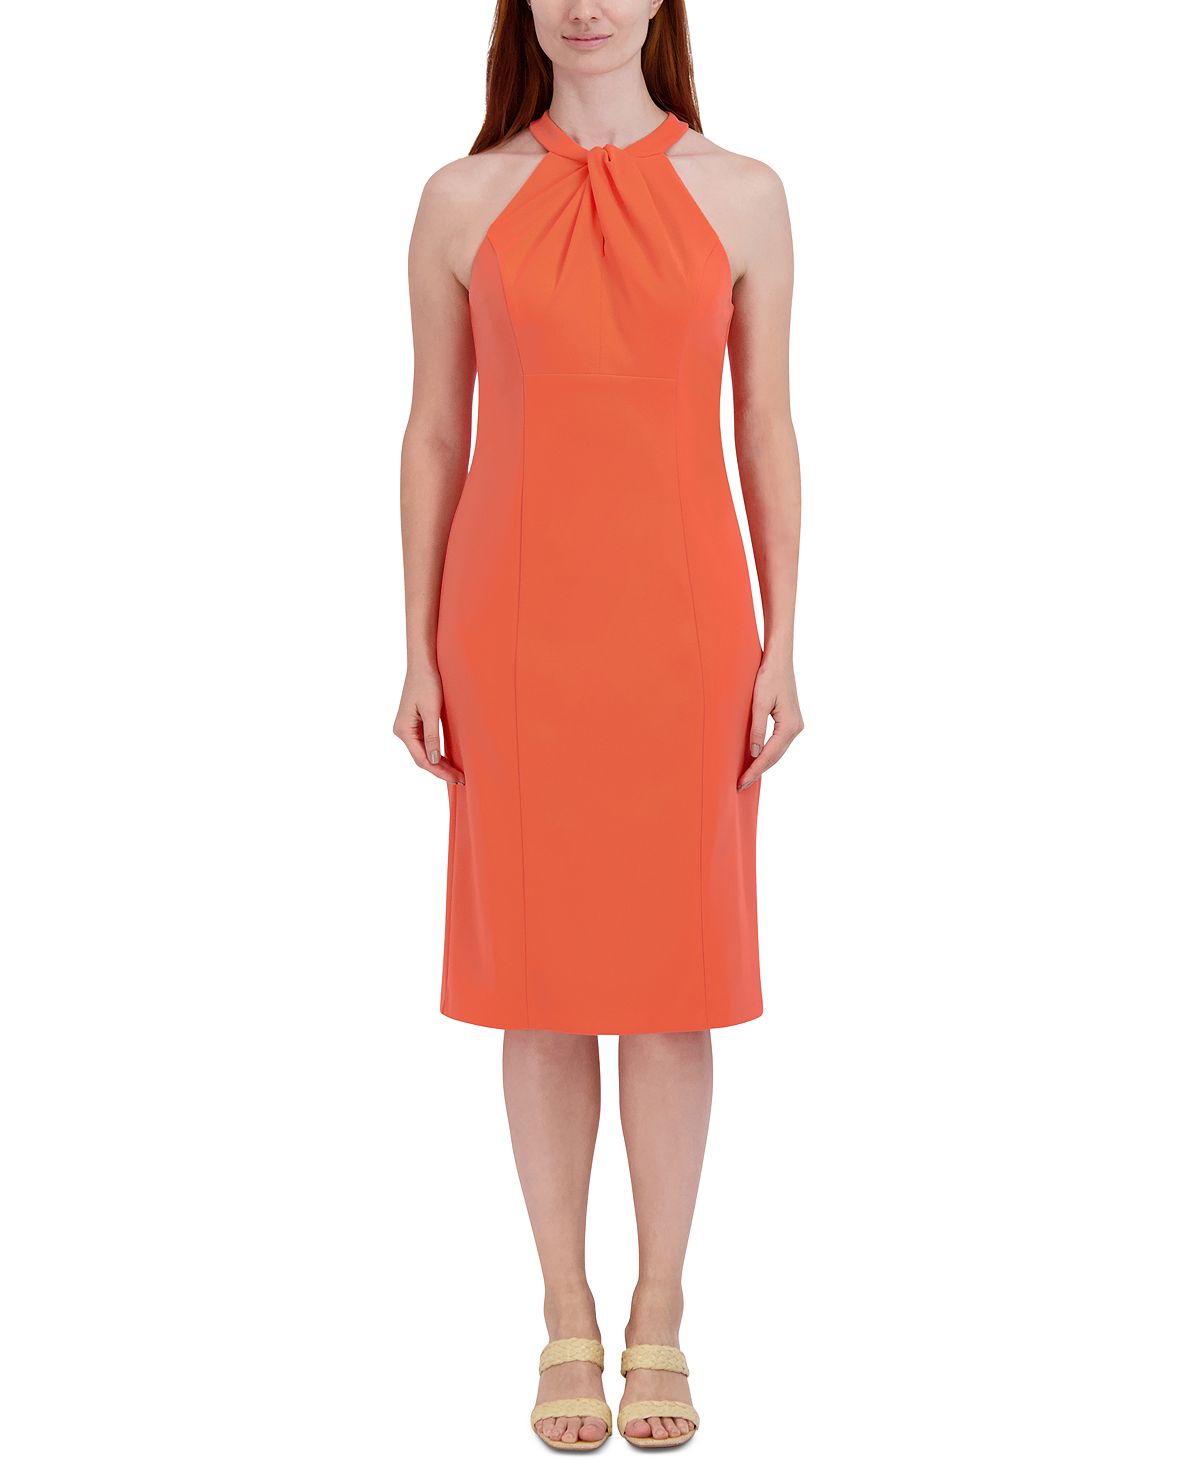 Платье-футляр без рукавов с вырезом халтер julia jordan, коралловый